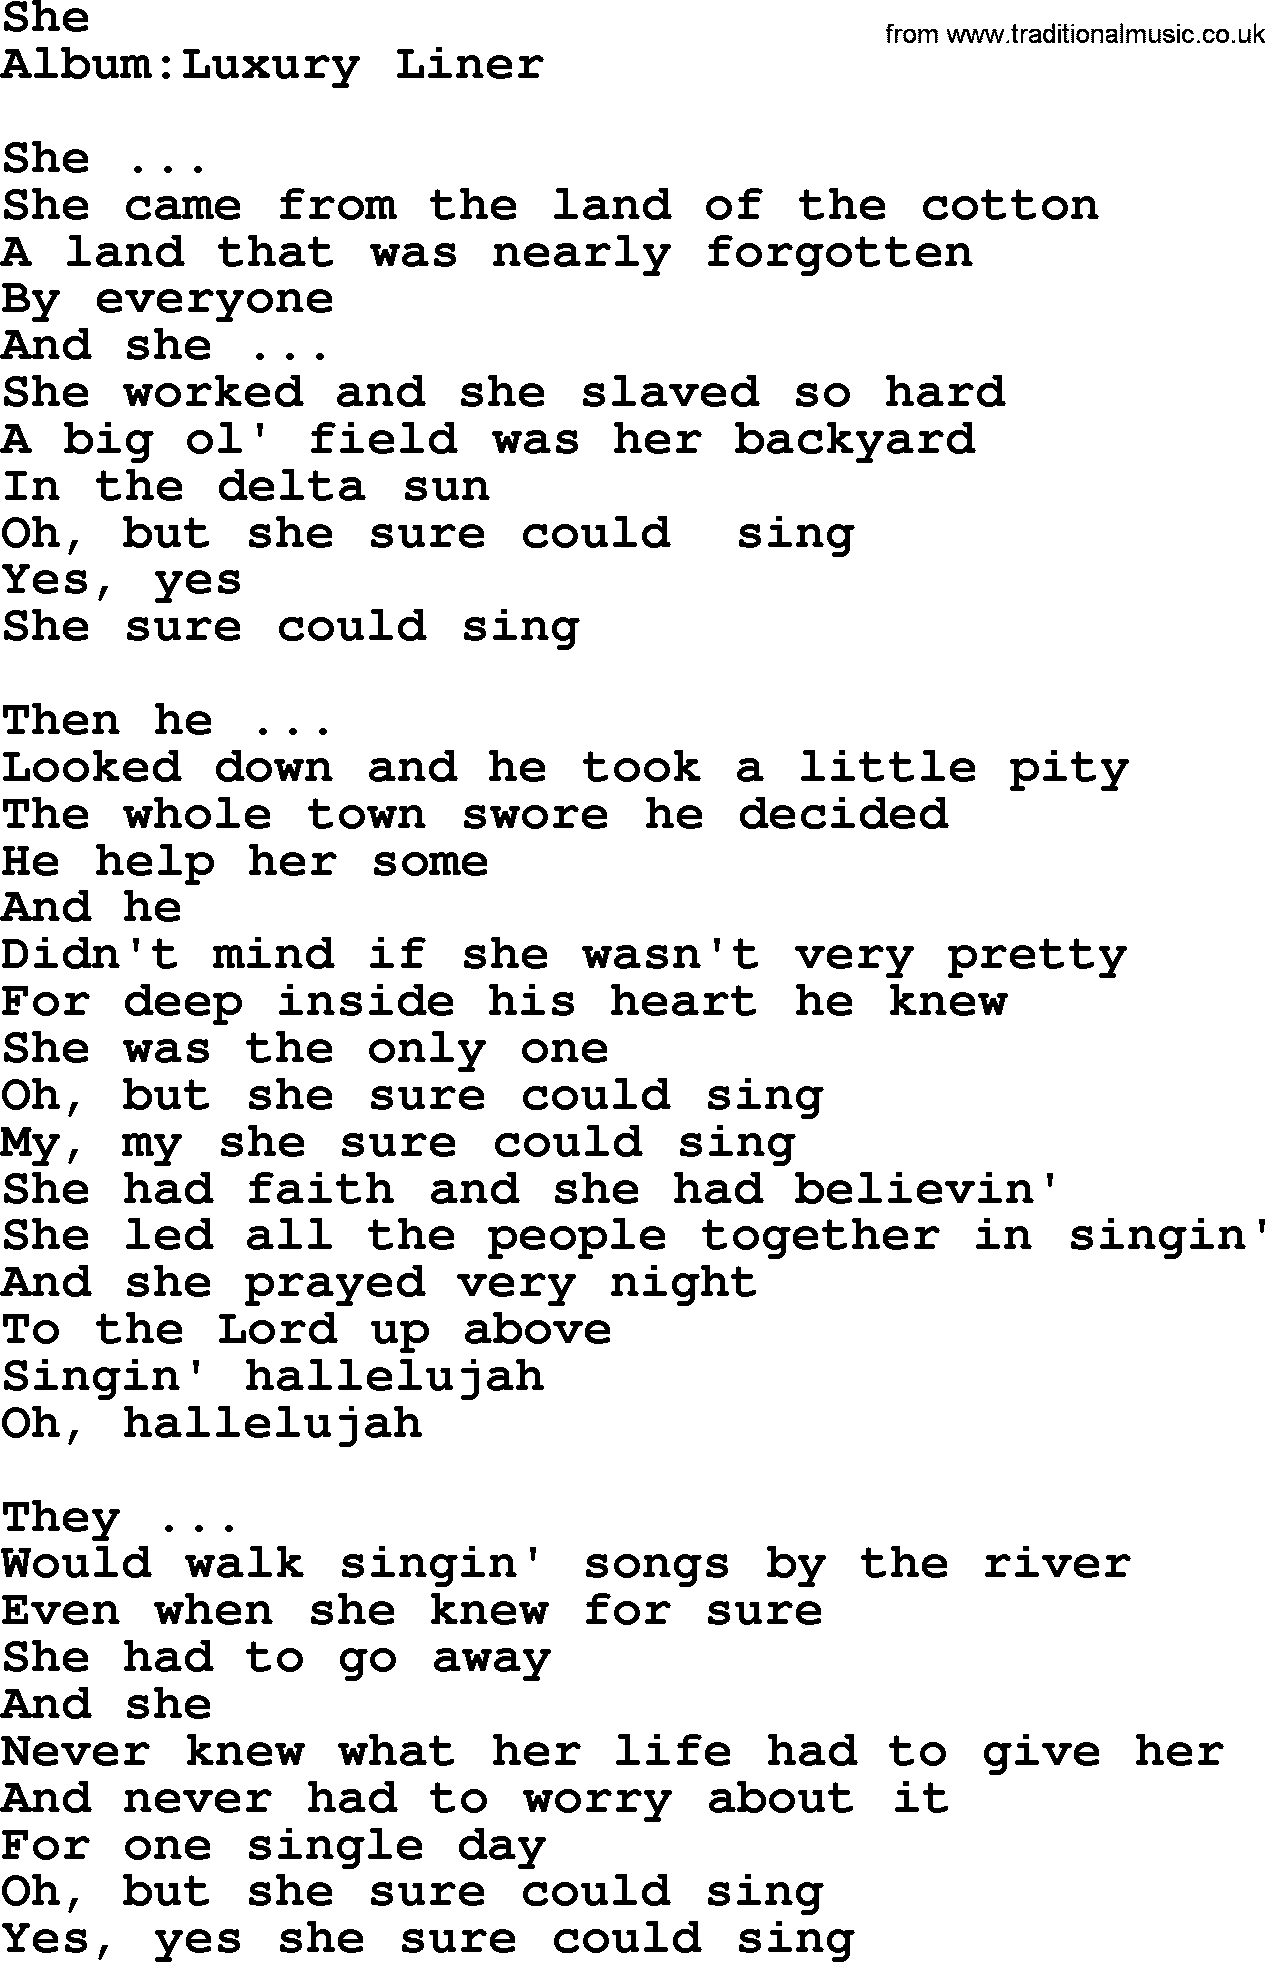 Emmylou Harris song: She lyrics